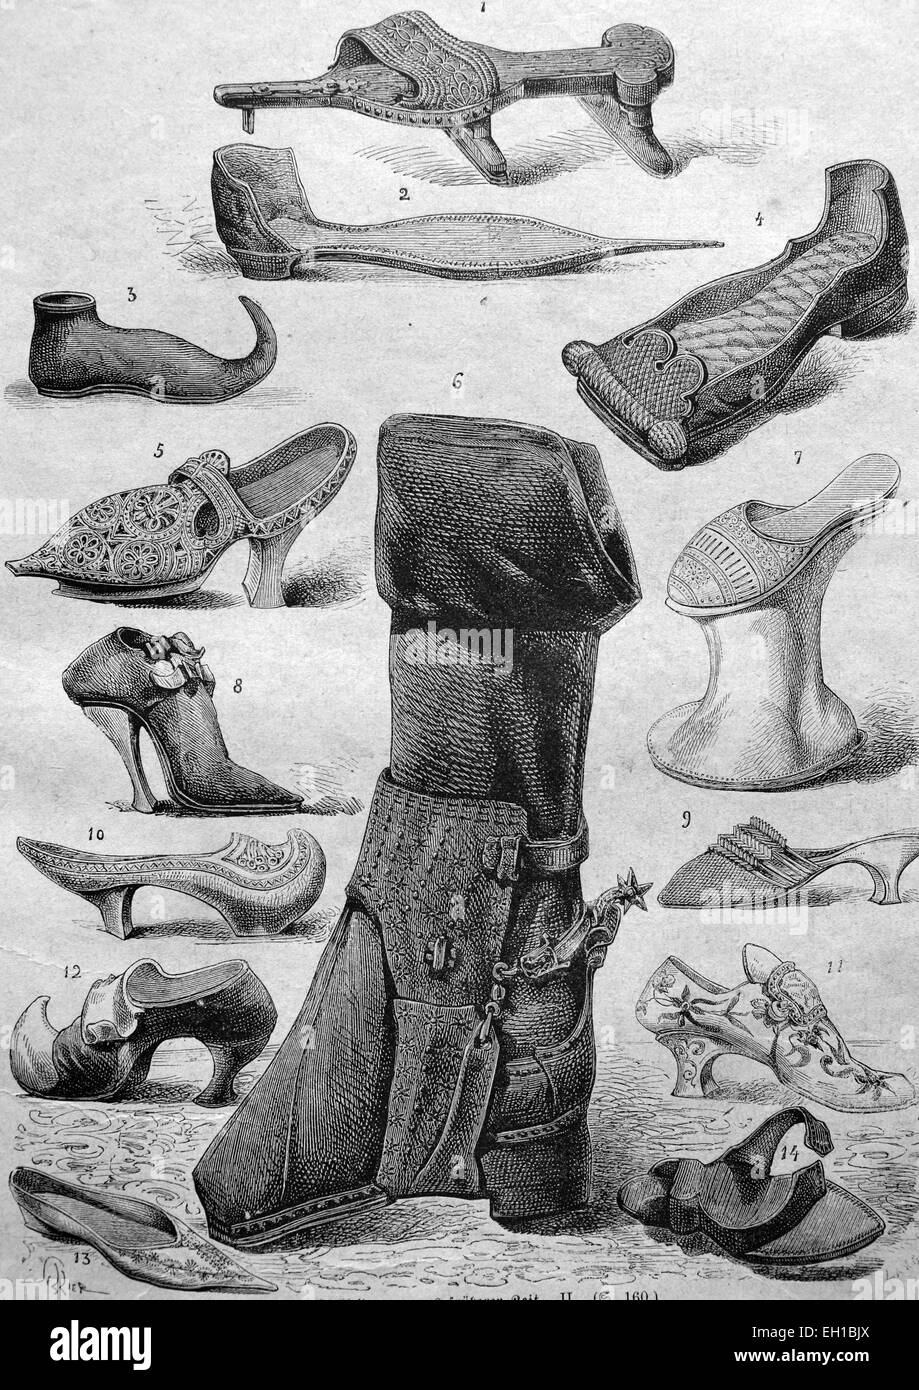 Scarpe moda dal Medioevo, 1 stampella scarpa, 2 - picco appuntito calzatura o poulaine, 3 - Pattino di picco o poulaine, 4 - pattino piatto, 5 - Pattino di legno, all'inizio del XVII secolo, 6 - stivali da cavallo, 7 - Kuehfuss, 8 - tacchi alti, 9 - pantofole dall'epoca della rivoluzione francese, 10 - legno patten, 11 - Veneziano scarpa in cuoio 12 - scarpe di legno con una saldatura in pelle-13 - Atlas scarpa di un cortigiano 14 - semplice di legno scarpa, illustrazione storico, 1877 Foto Stock